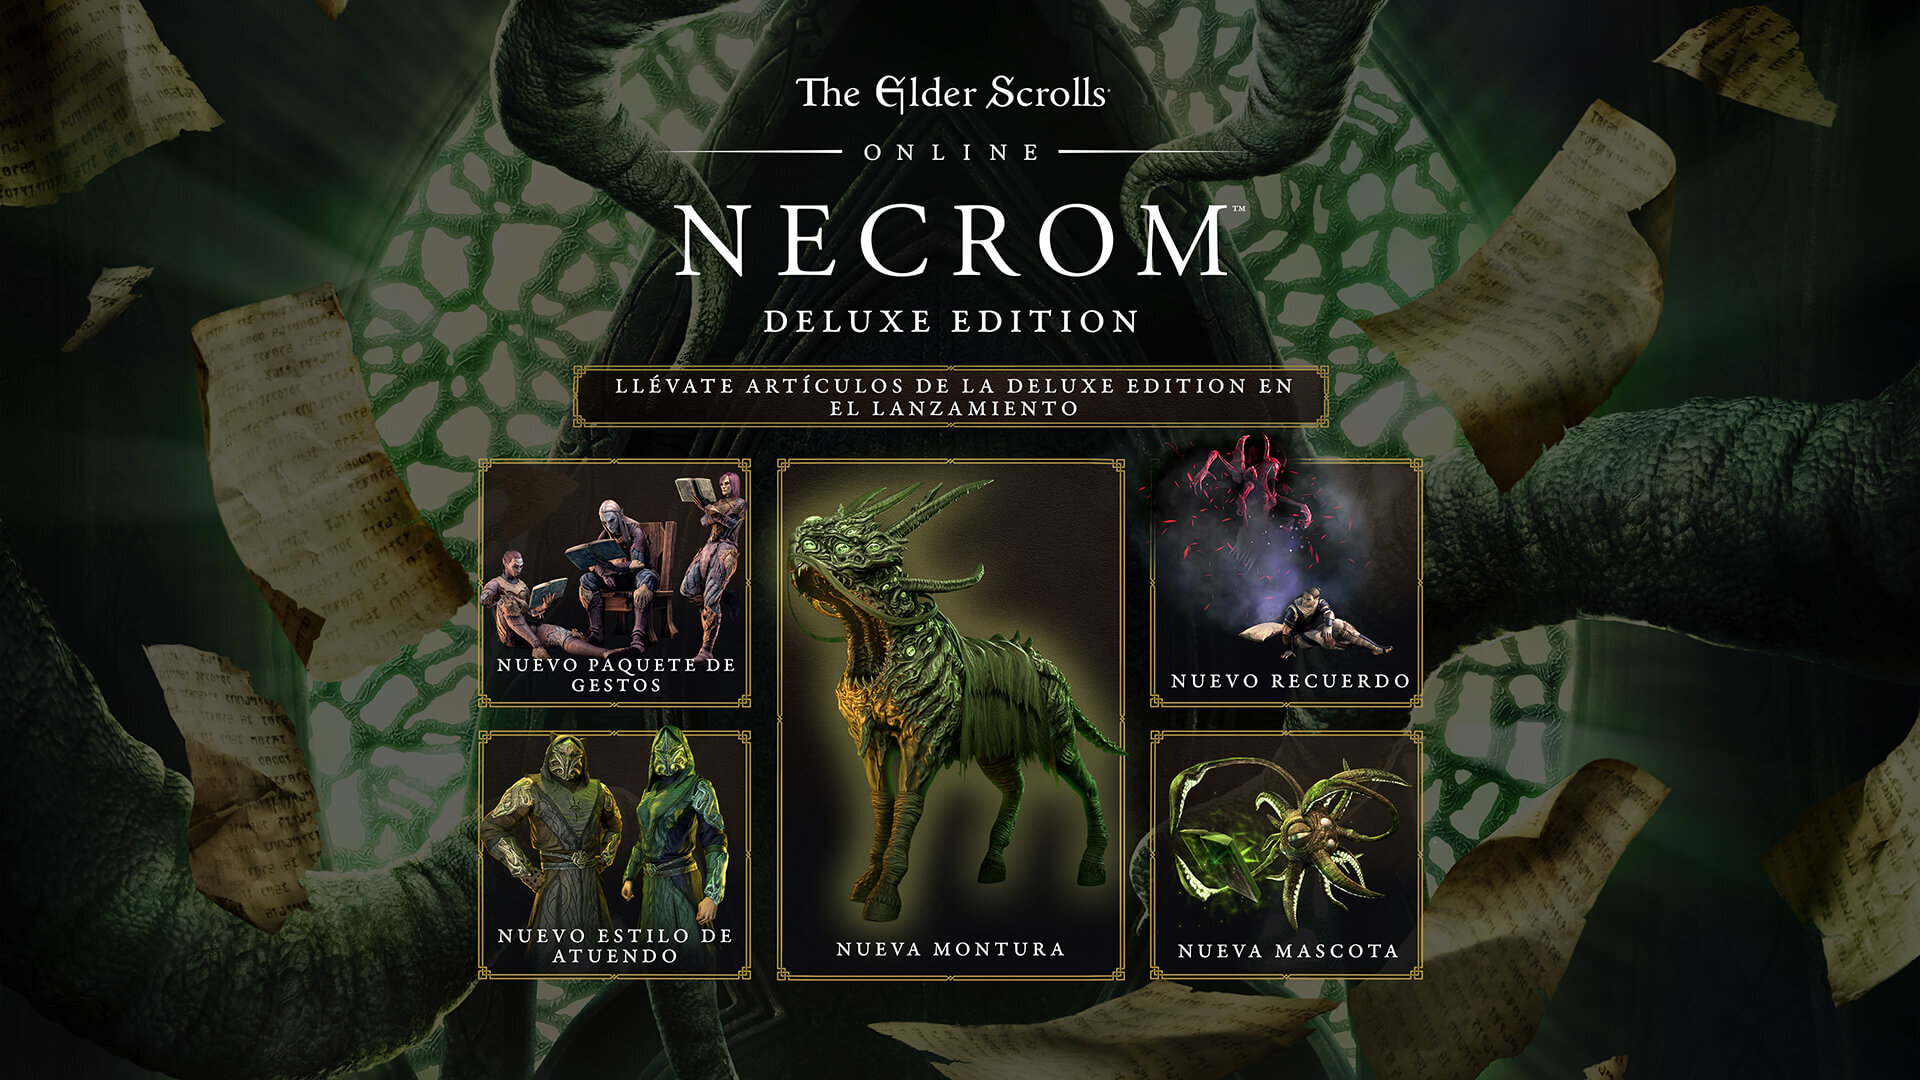 Edições de The Elder Scrolls Online: Greymoor e recompensas de